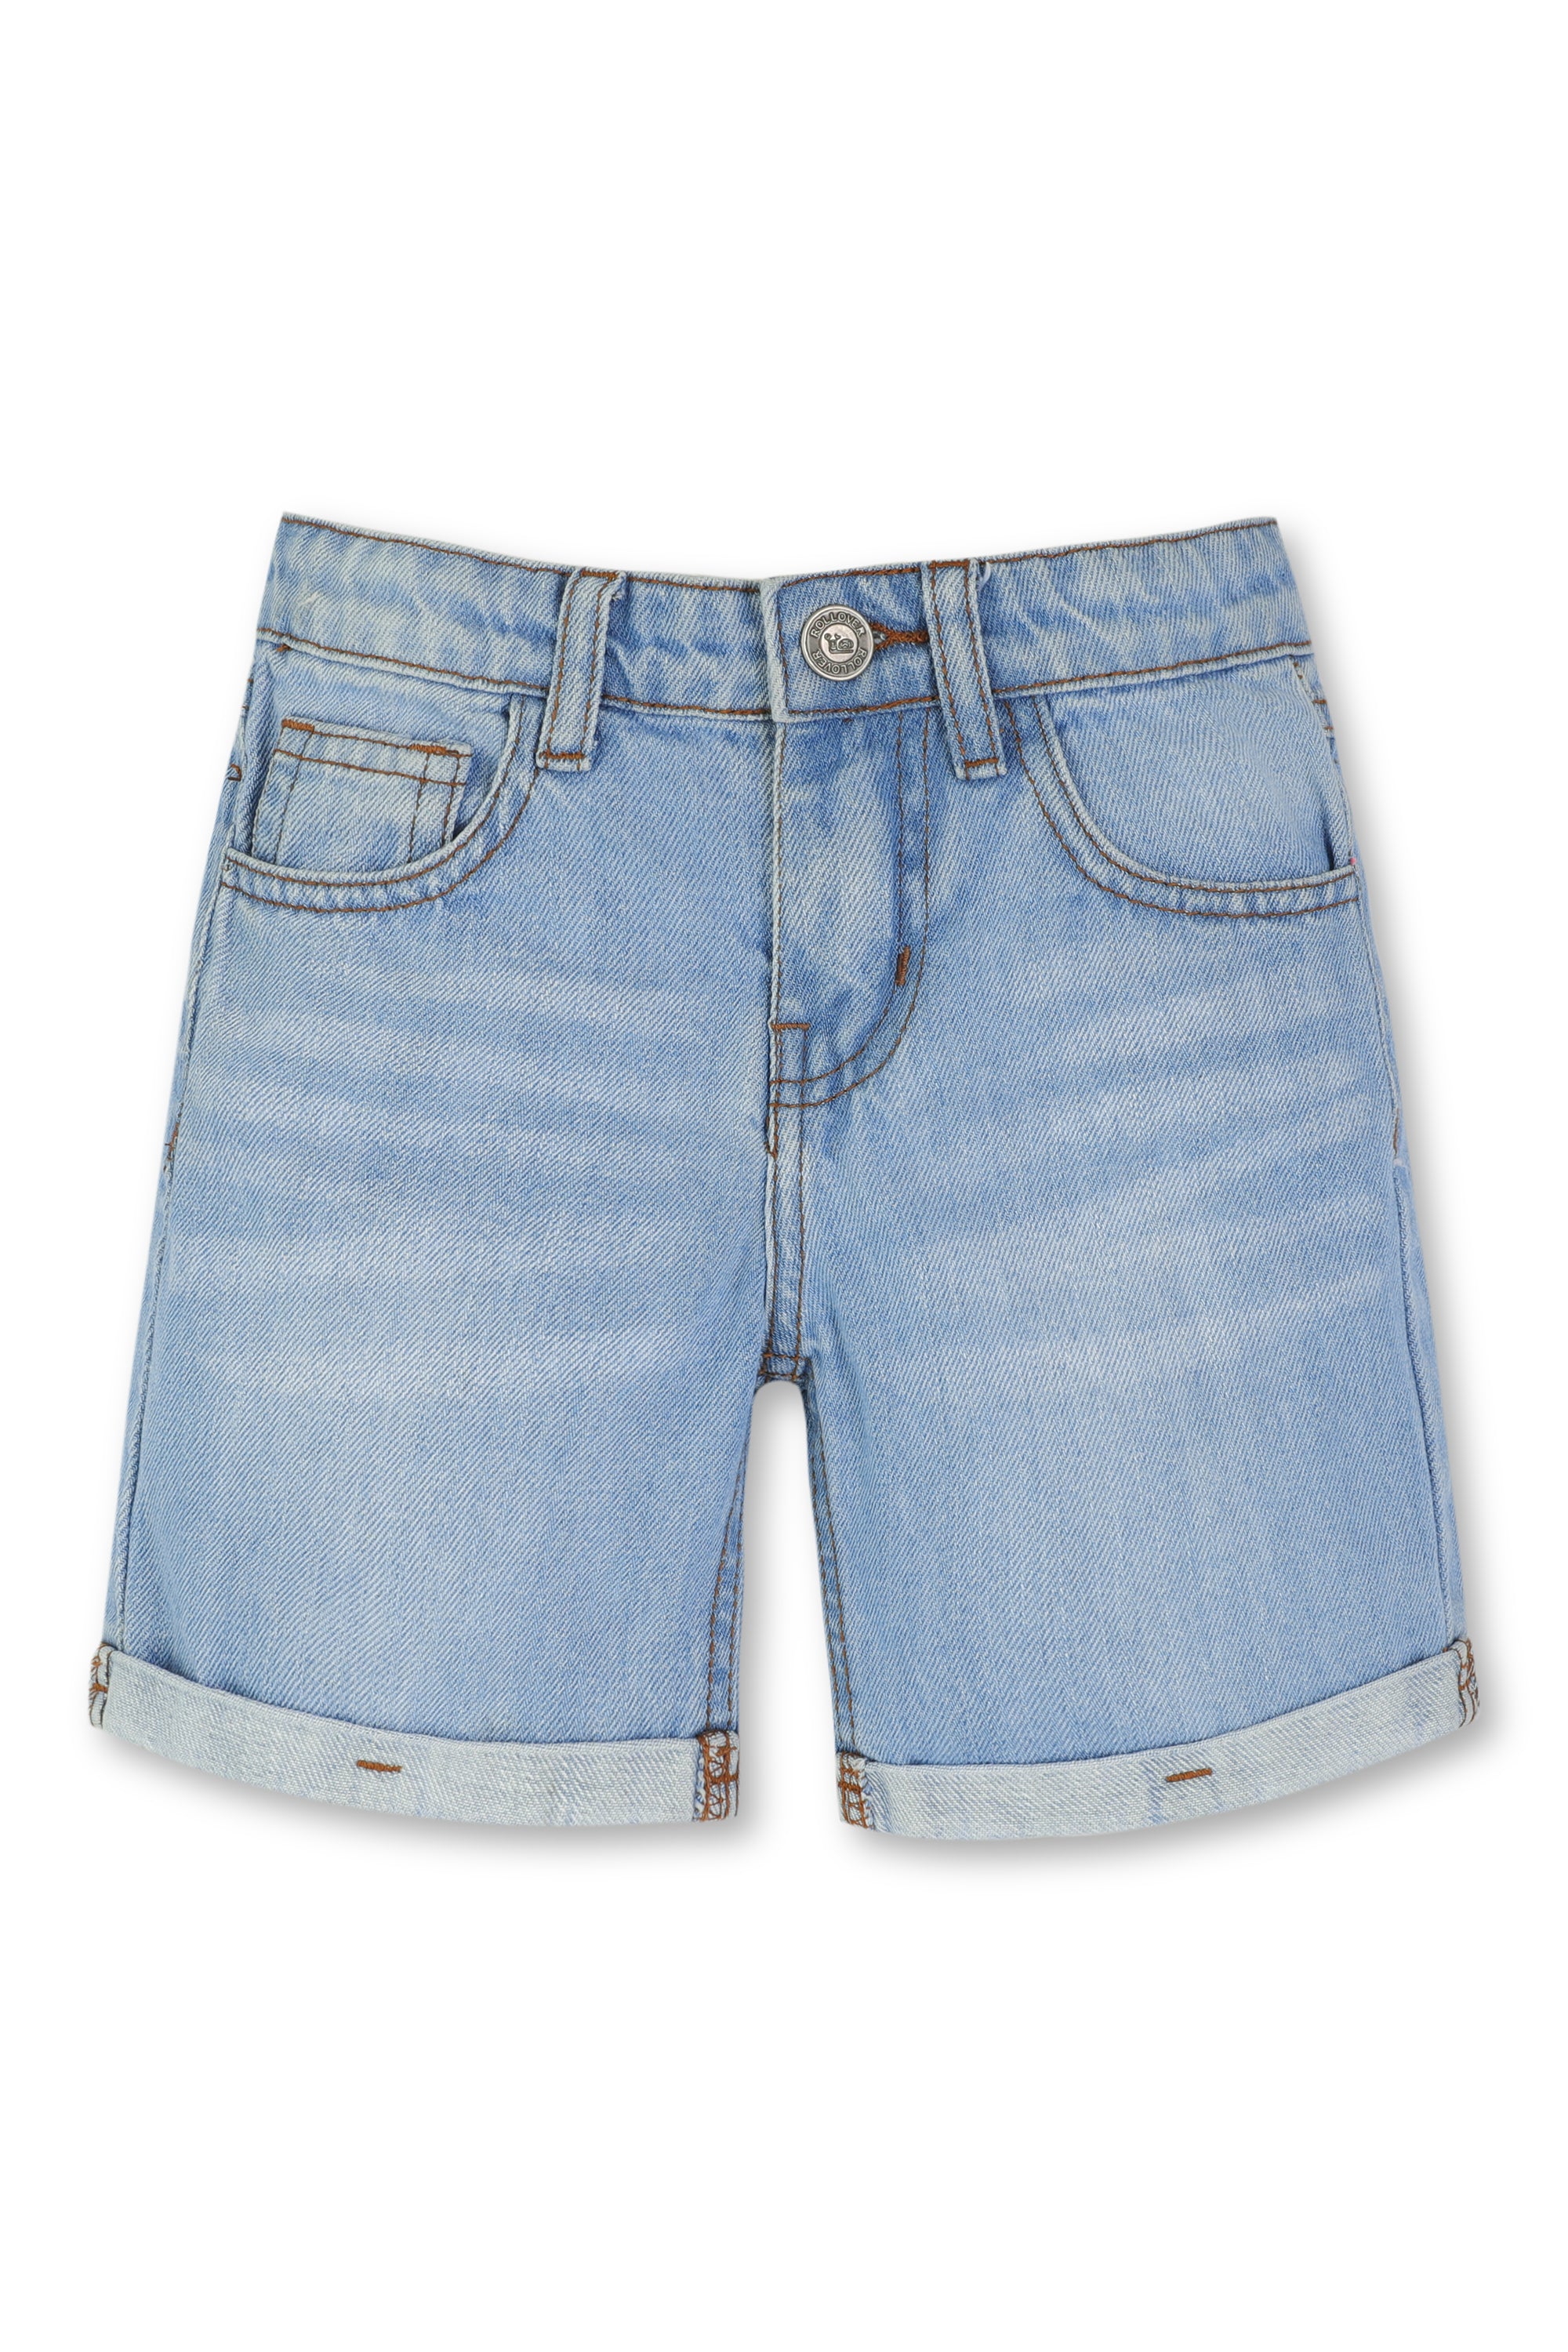 Boy's Blue Cuffed Denim Shorts